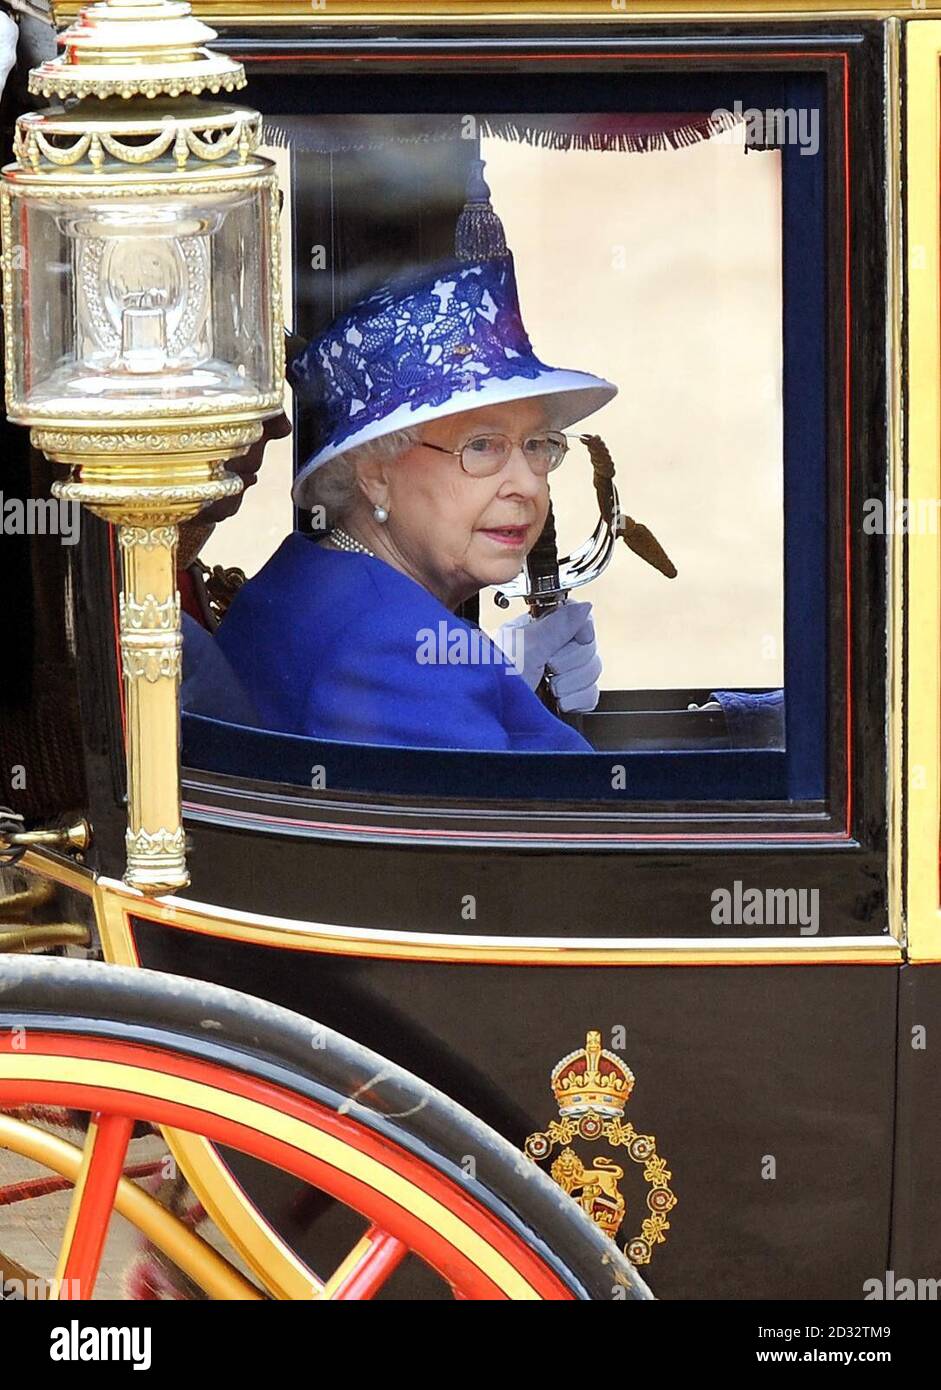 La reine Elizabeth II part après Trooping the Color à Horse Guards Parade, Londres. Banque D'Images